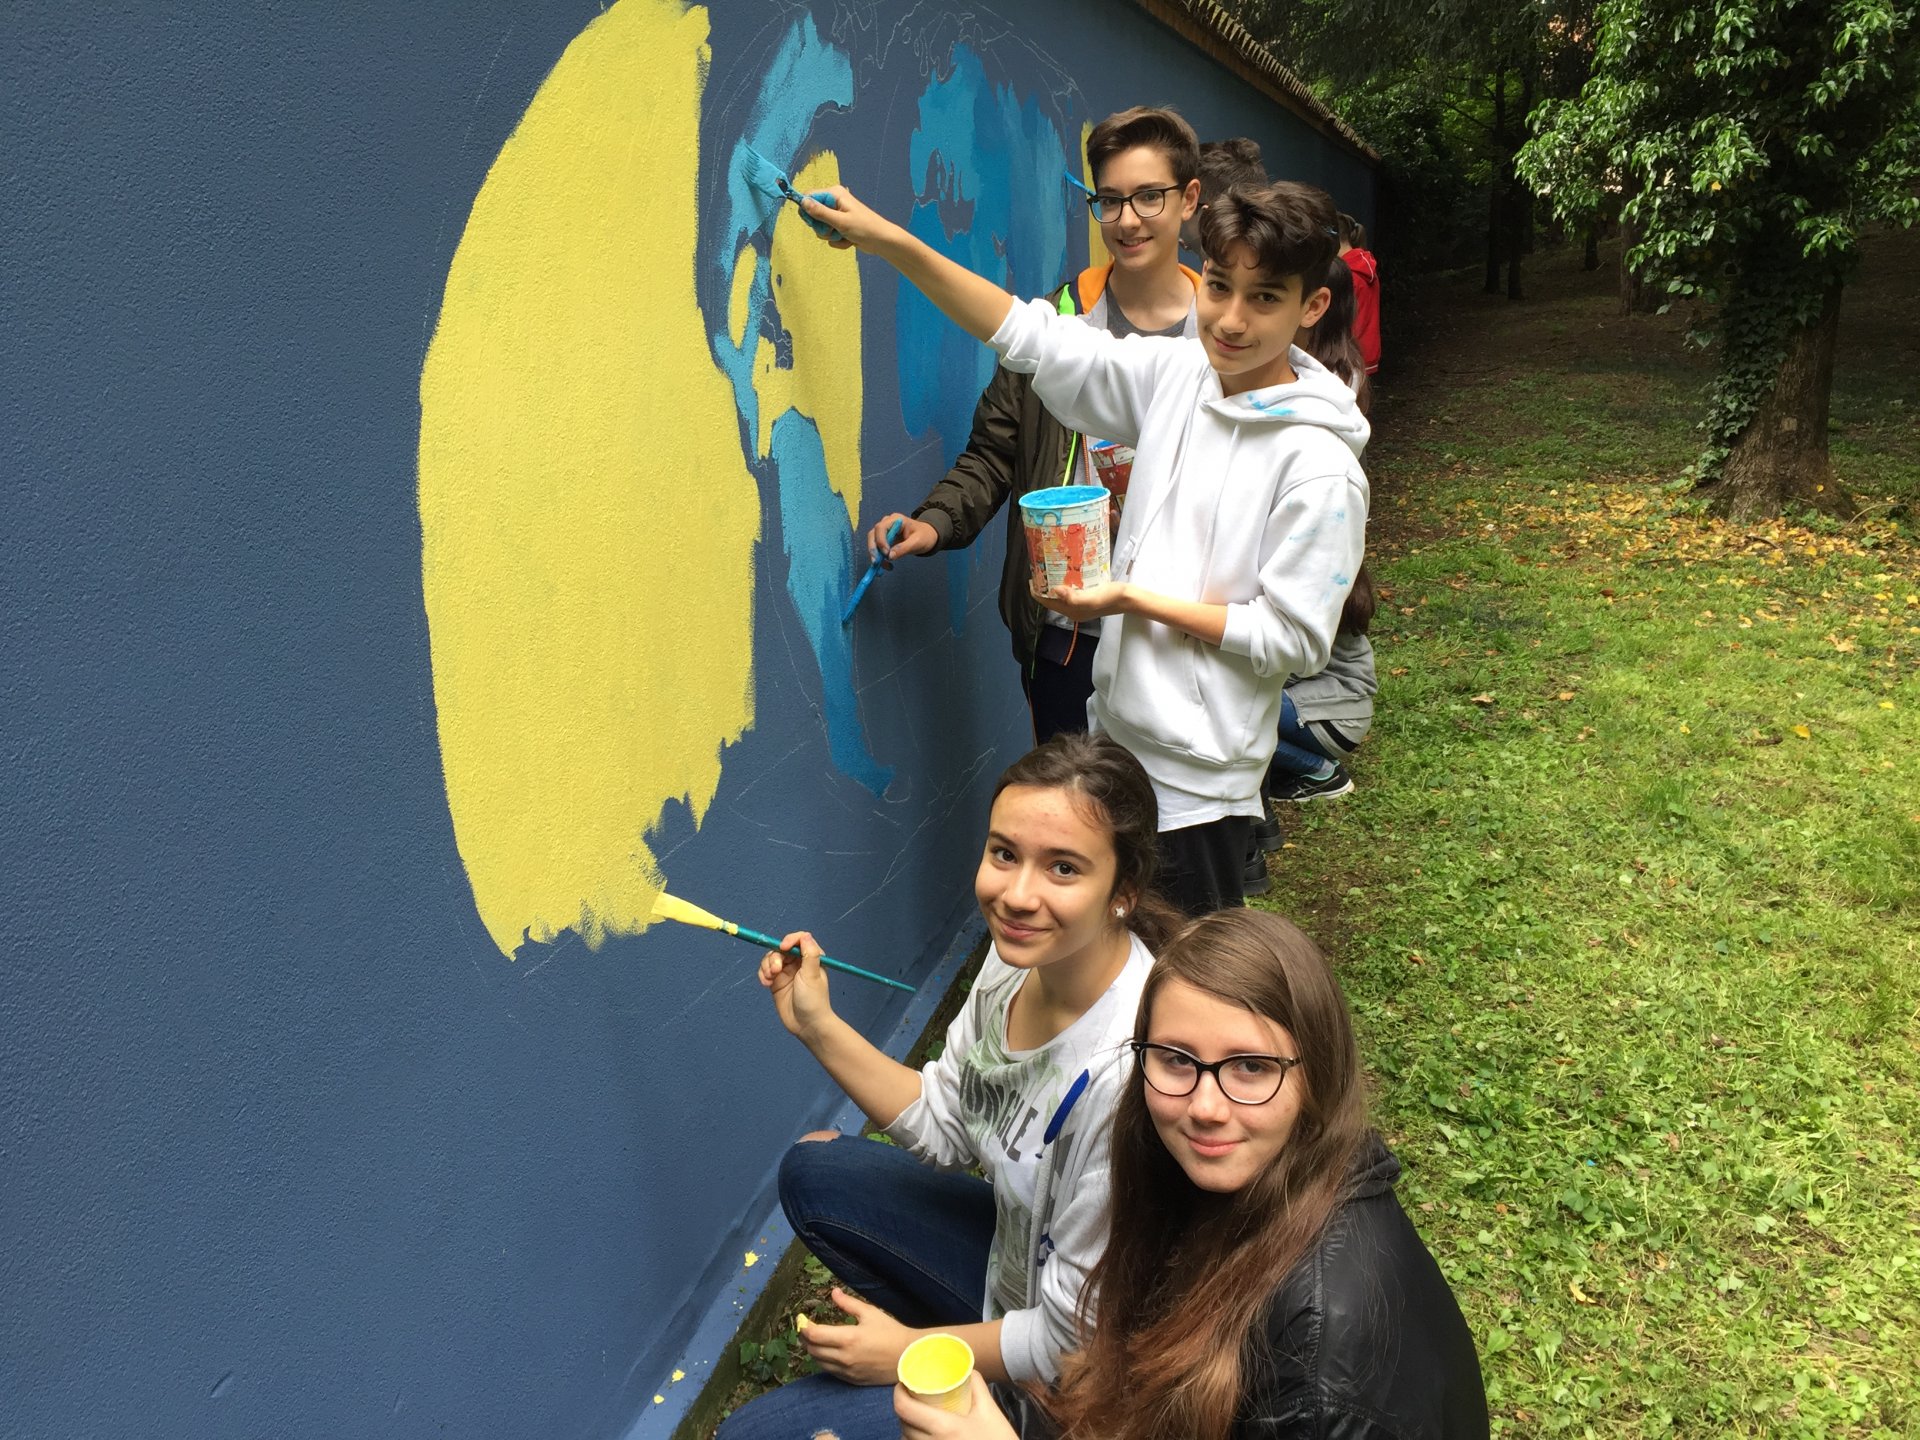 Brugherio Un muro che unisce nel parco di Villa Fiorita Murale dipinto dai ragazzi delle scuole medie del territorio simbolo di integrazione